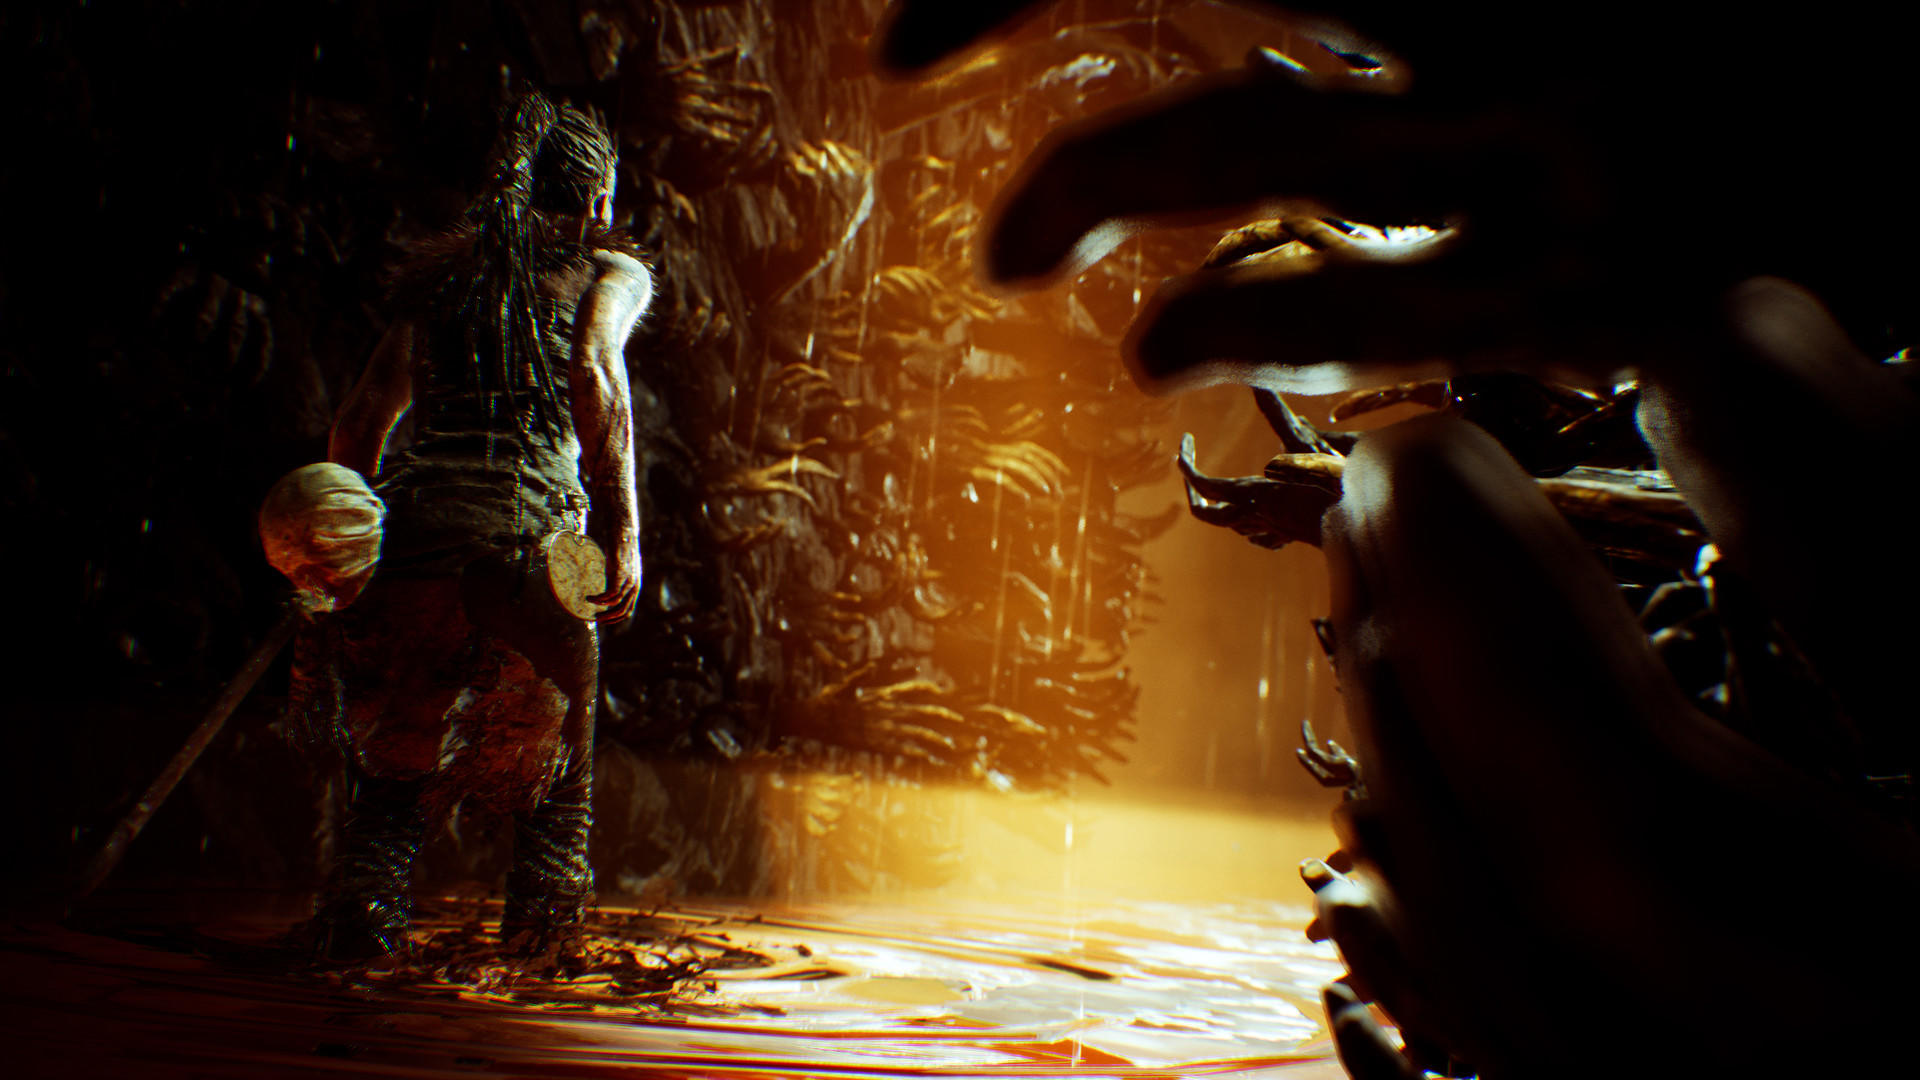 Hellblade: Senua's Sacrifice screenshot game